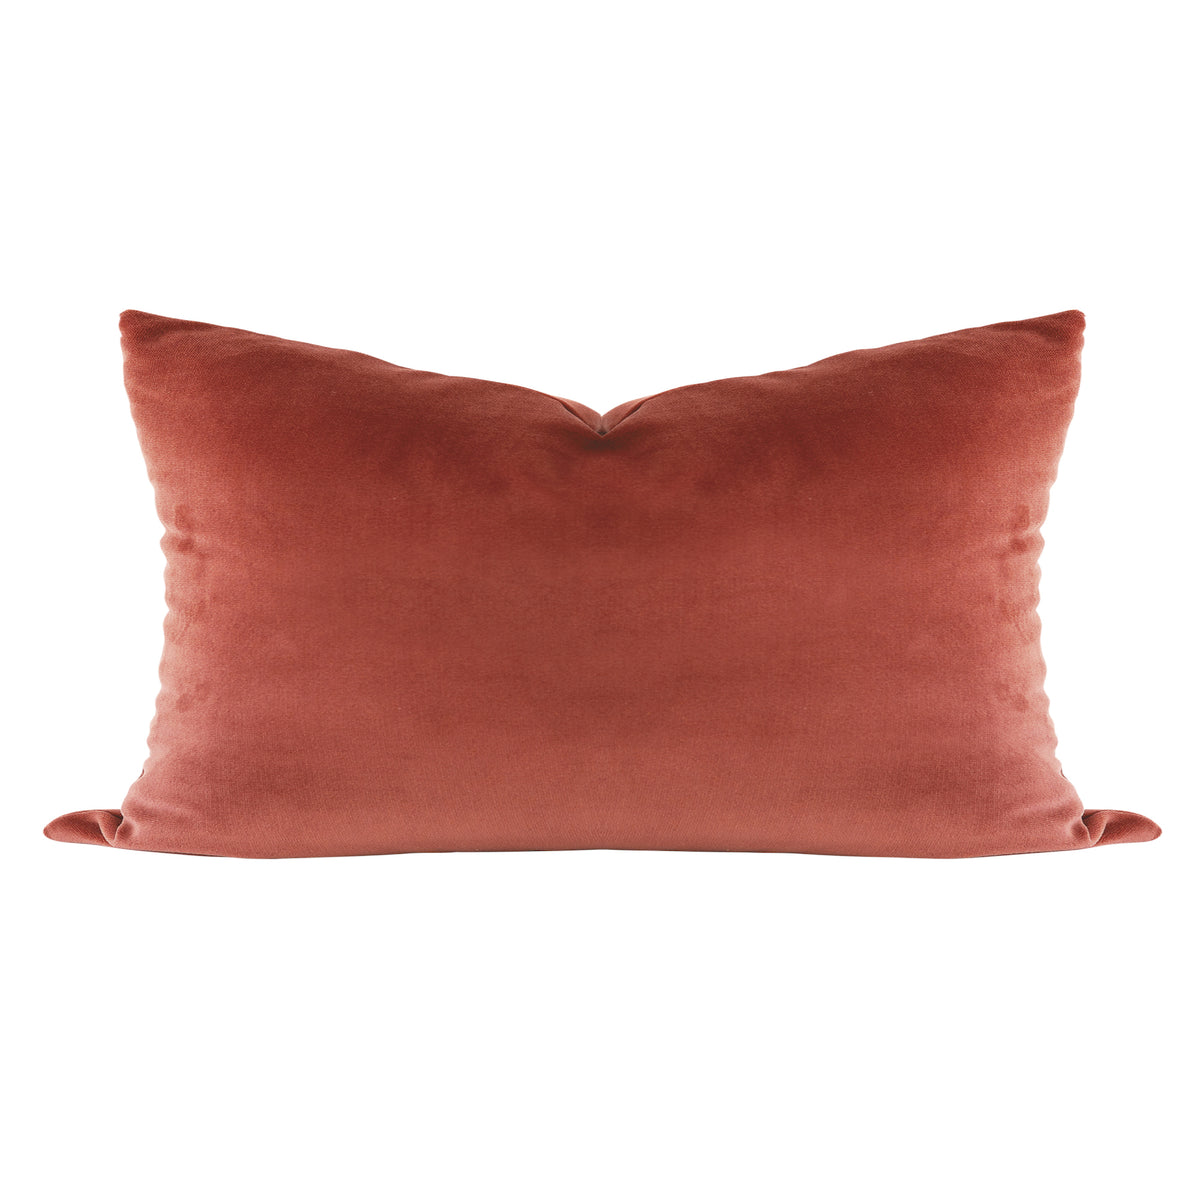 Cinnamon Velvet Pillow Cover